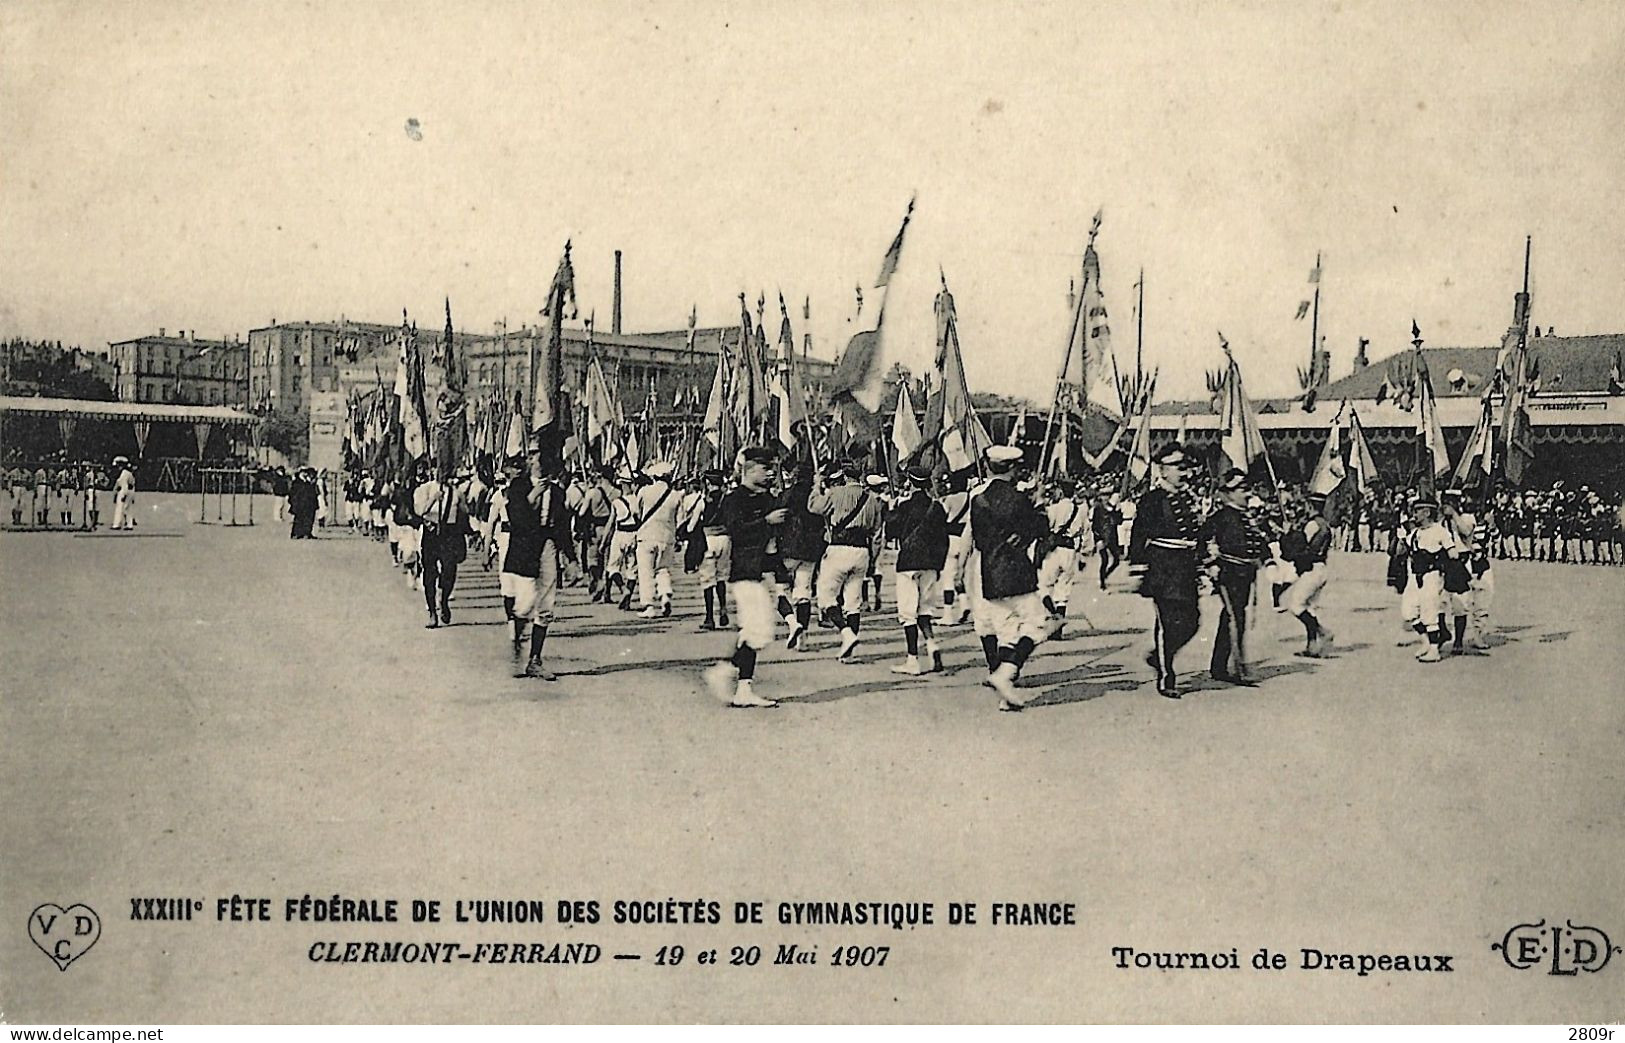 LOT 8 Cartes Fete Federale De L'union Des Societes De Gymnstique De France 19/20 Mai 1907 - Clermont Ferrand